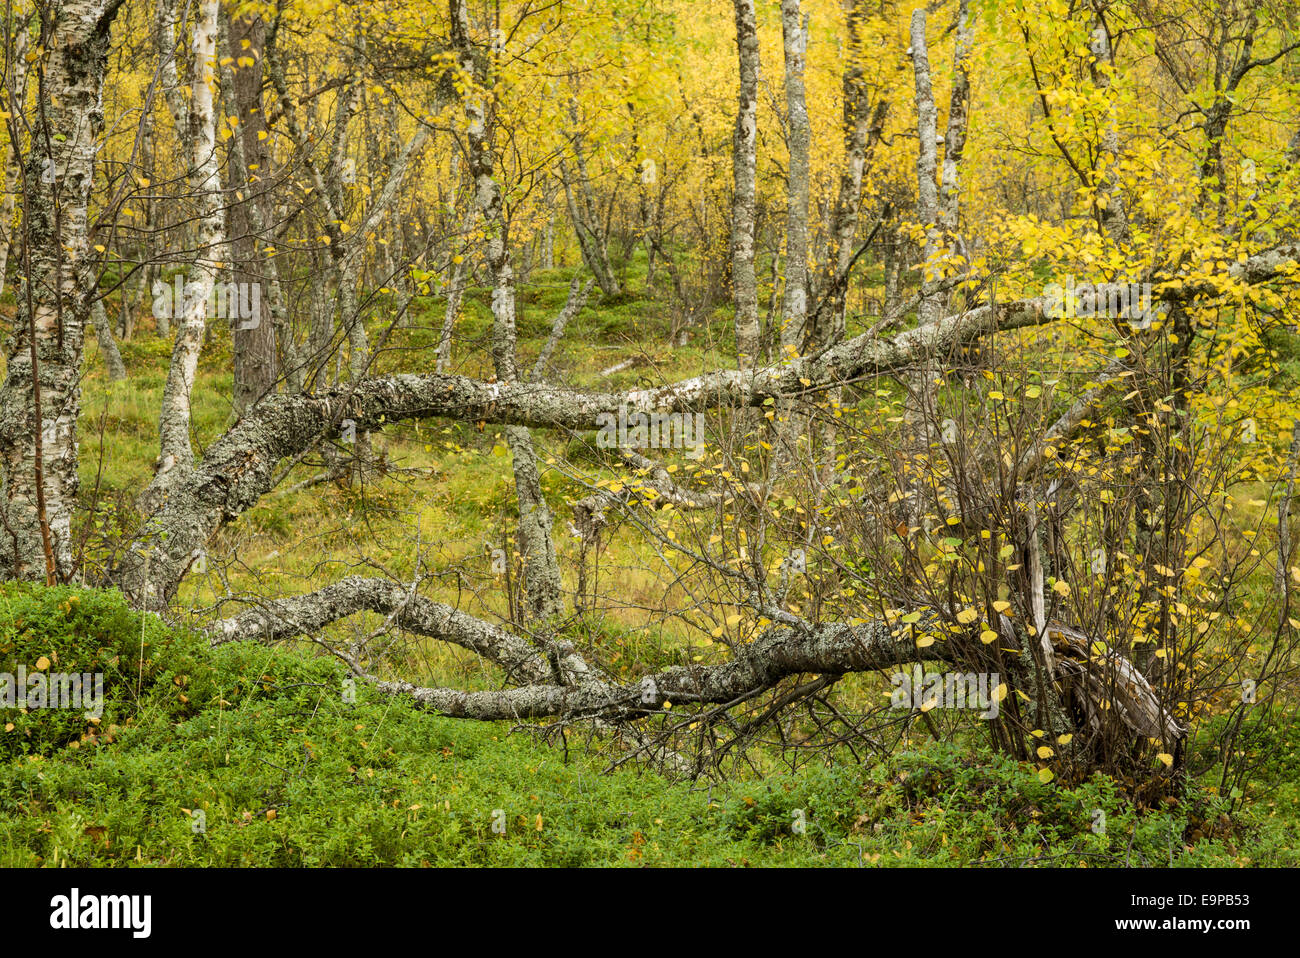 Le bouleau verruqueux (Betula pendula) habitat de forêt ancienne, avec des feuilles en automne, couleur, Skibotn Laponie, Norvège du Nord, septembre Banque D'Images